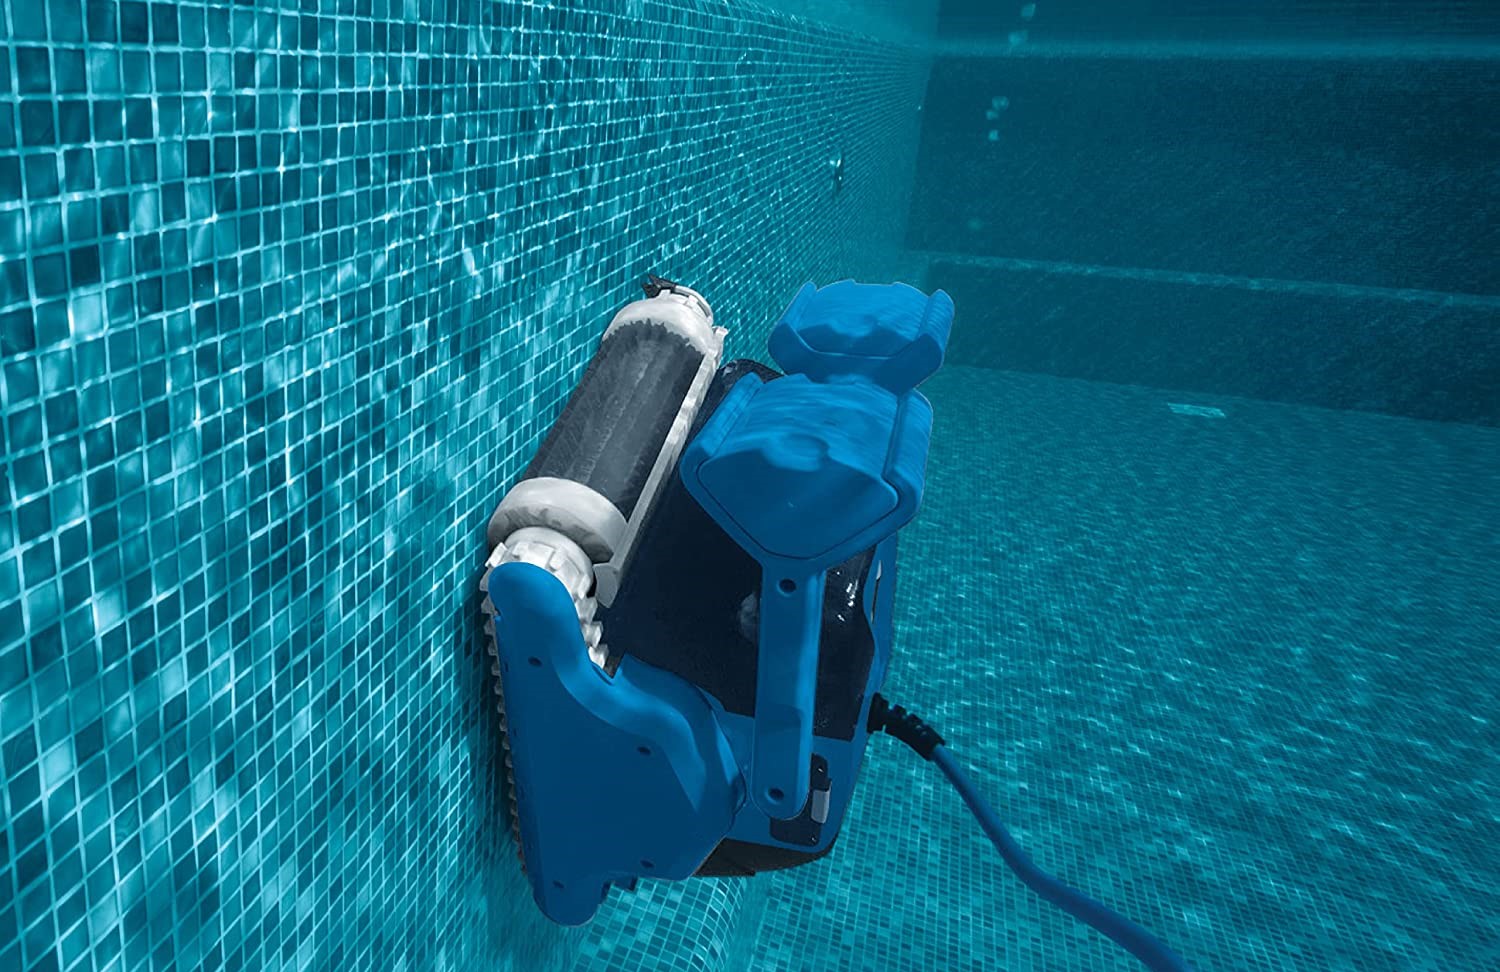 Dolphin F50, robot piscina pulizia fondo e pareti.